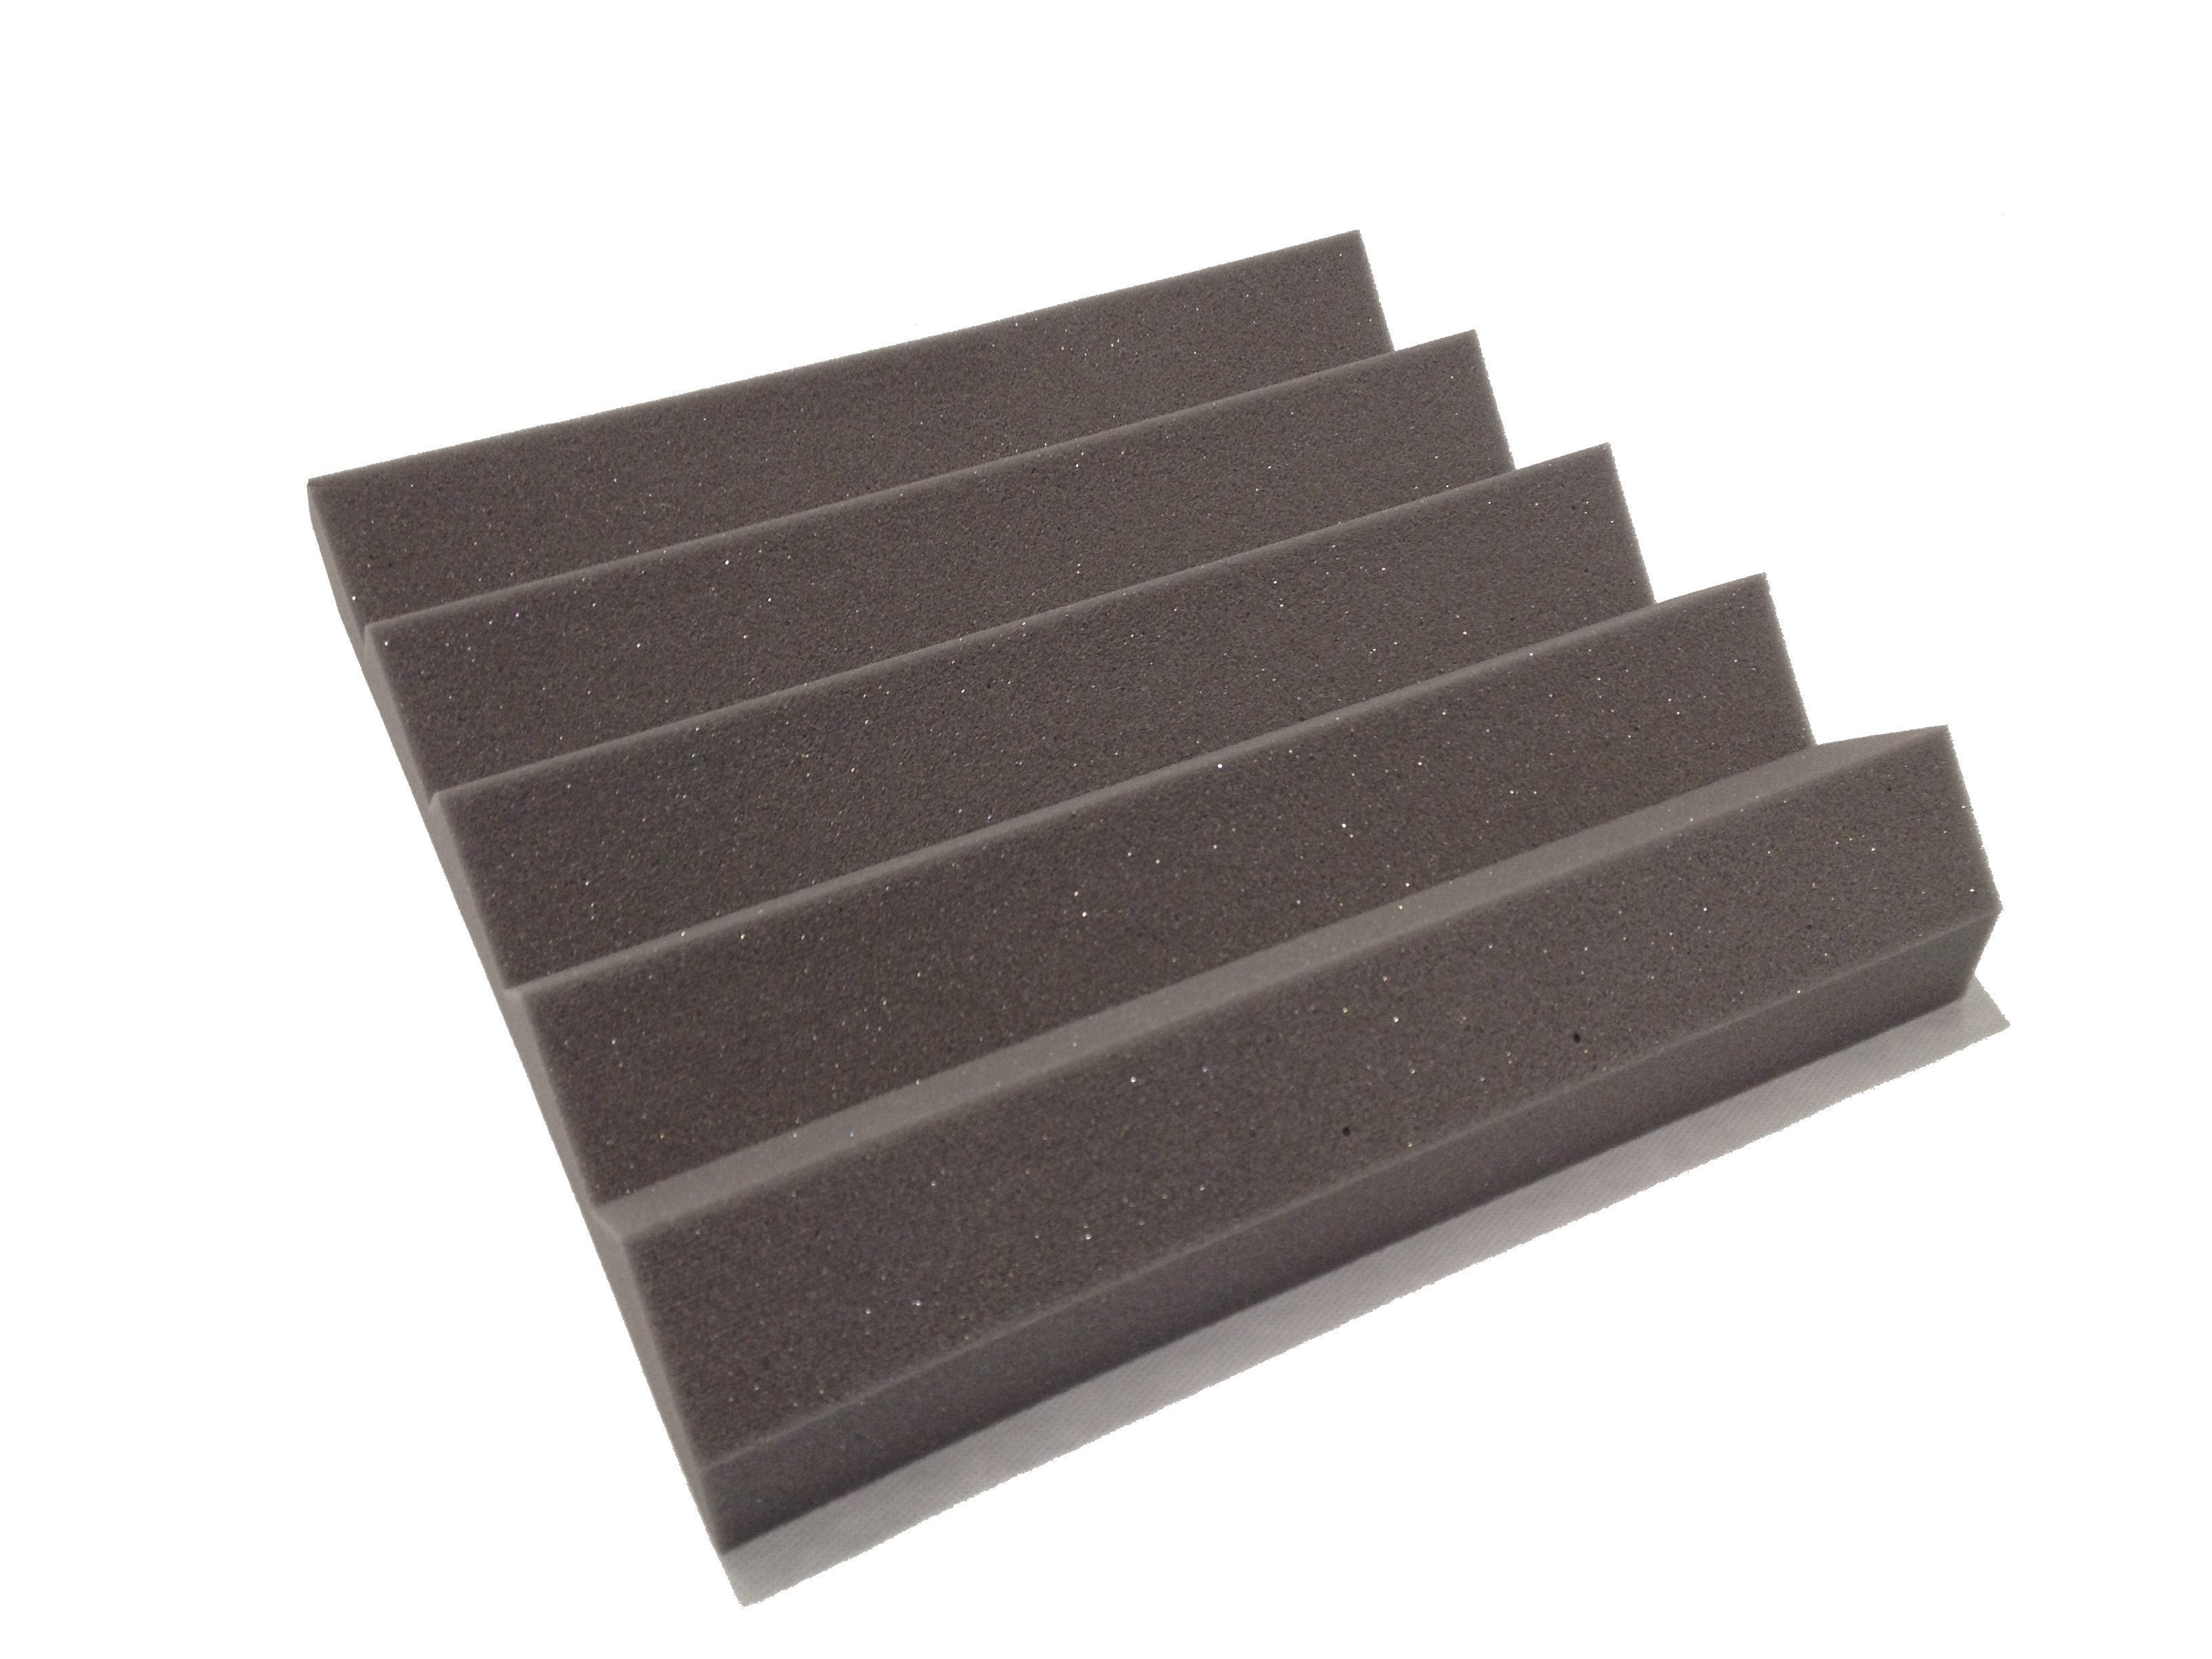 Wedge PRO 15" Acoustic Studio Foam Tile Pack - Advanced Acoustics